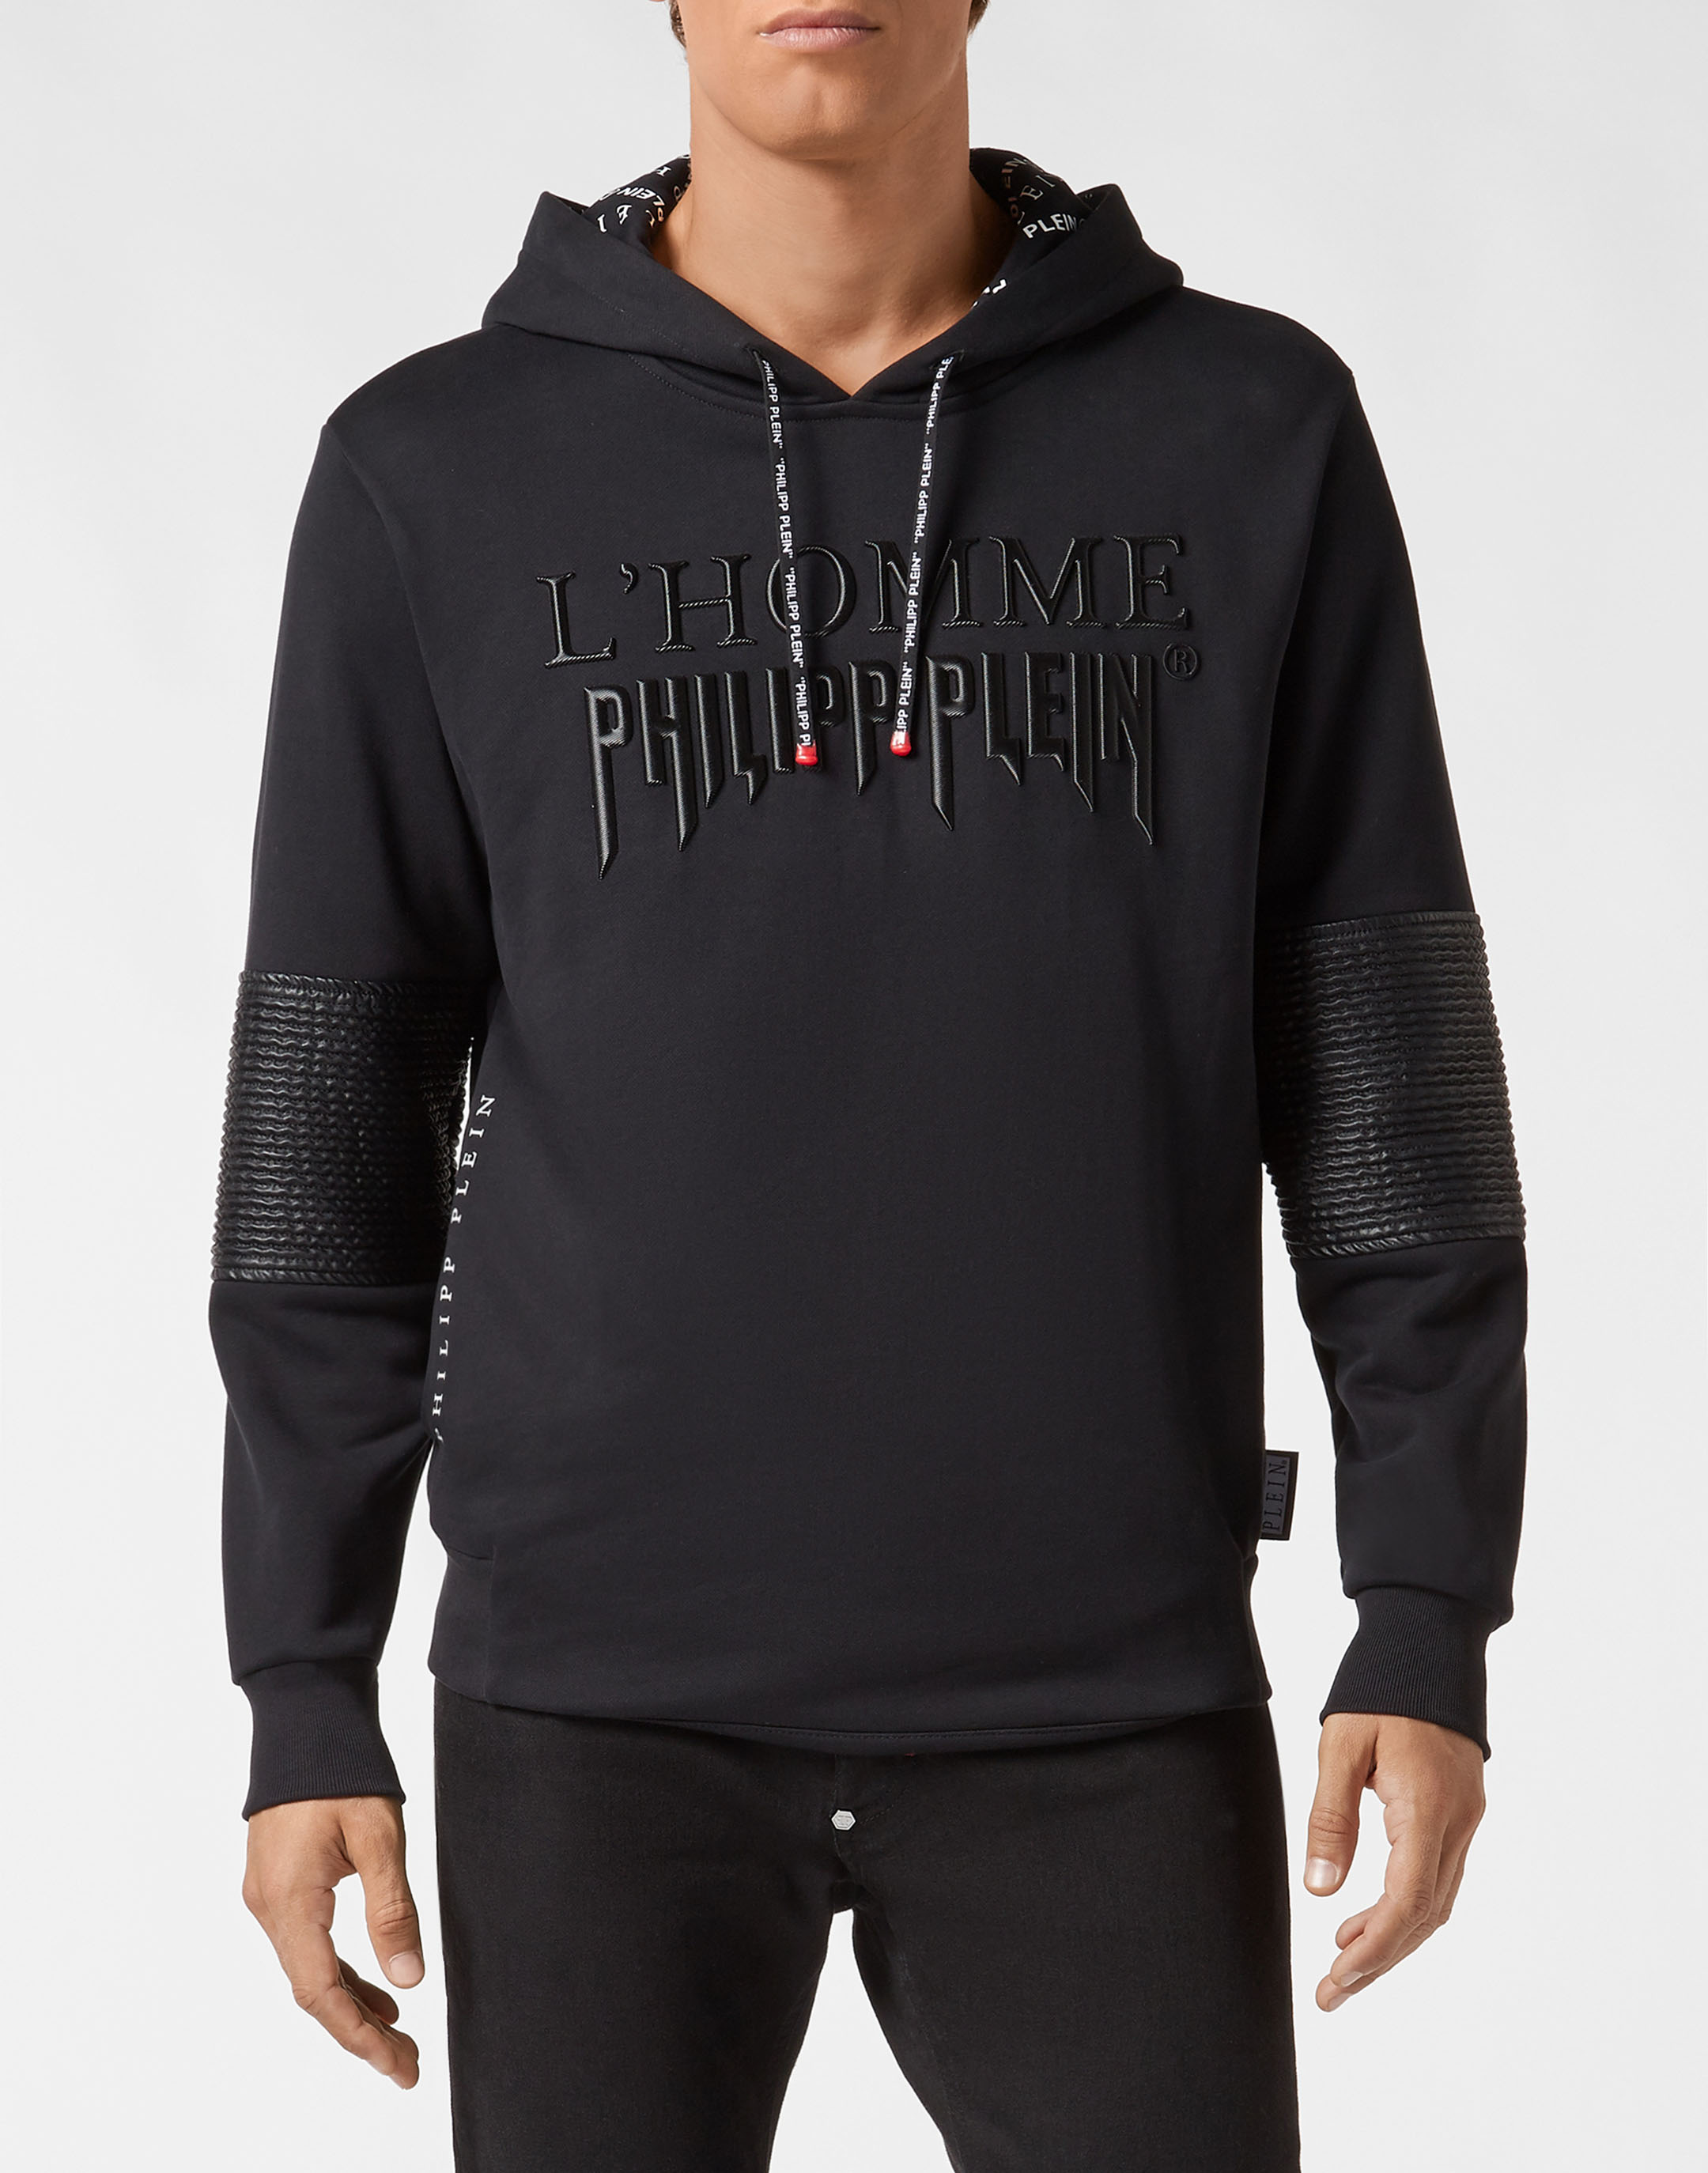 philipp plein hoodie sale